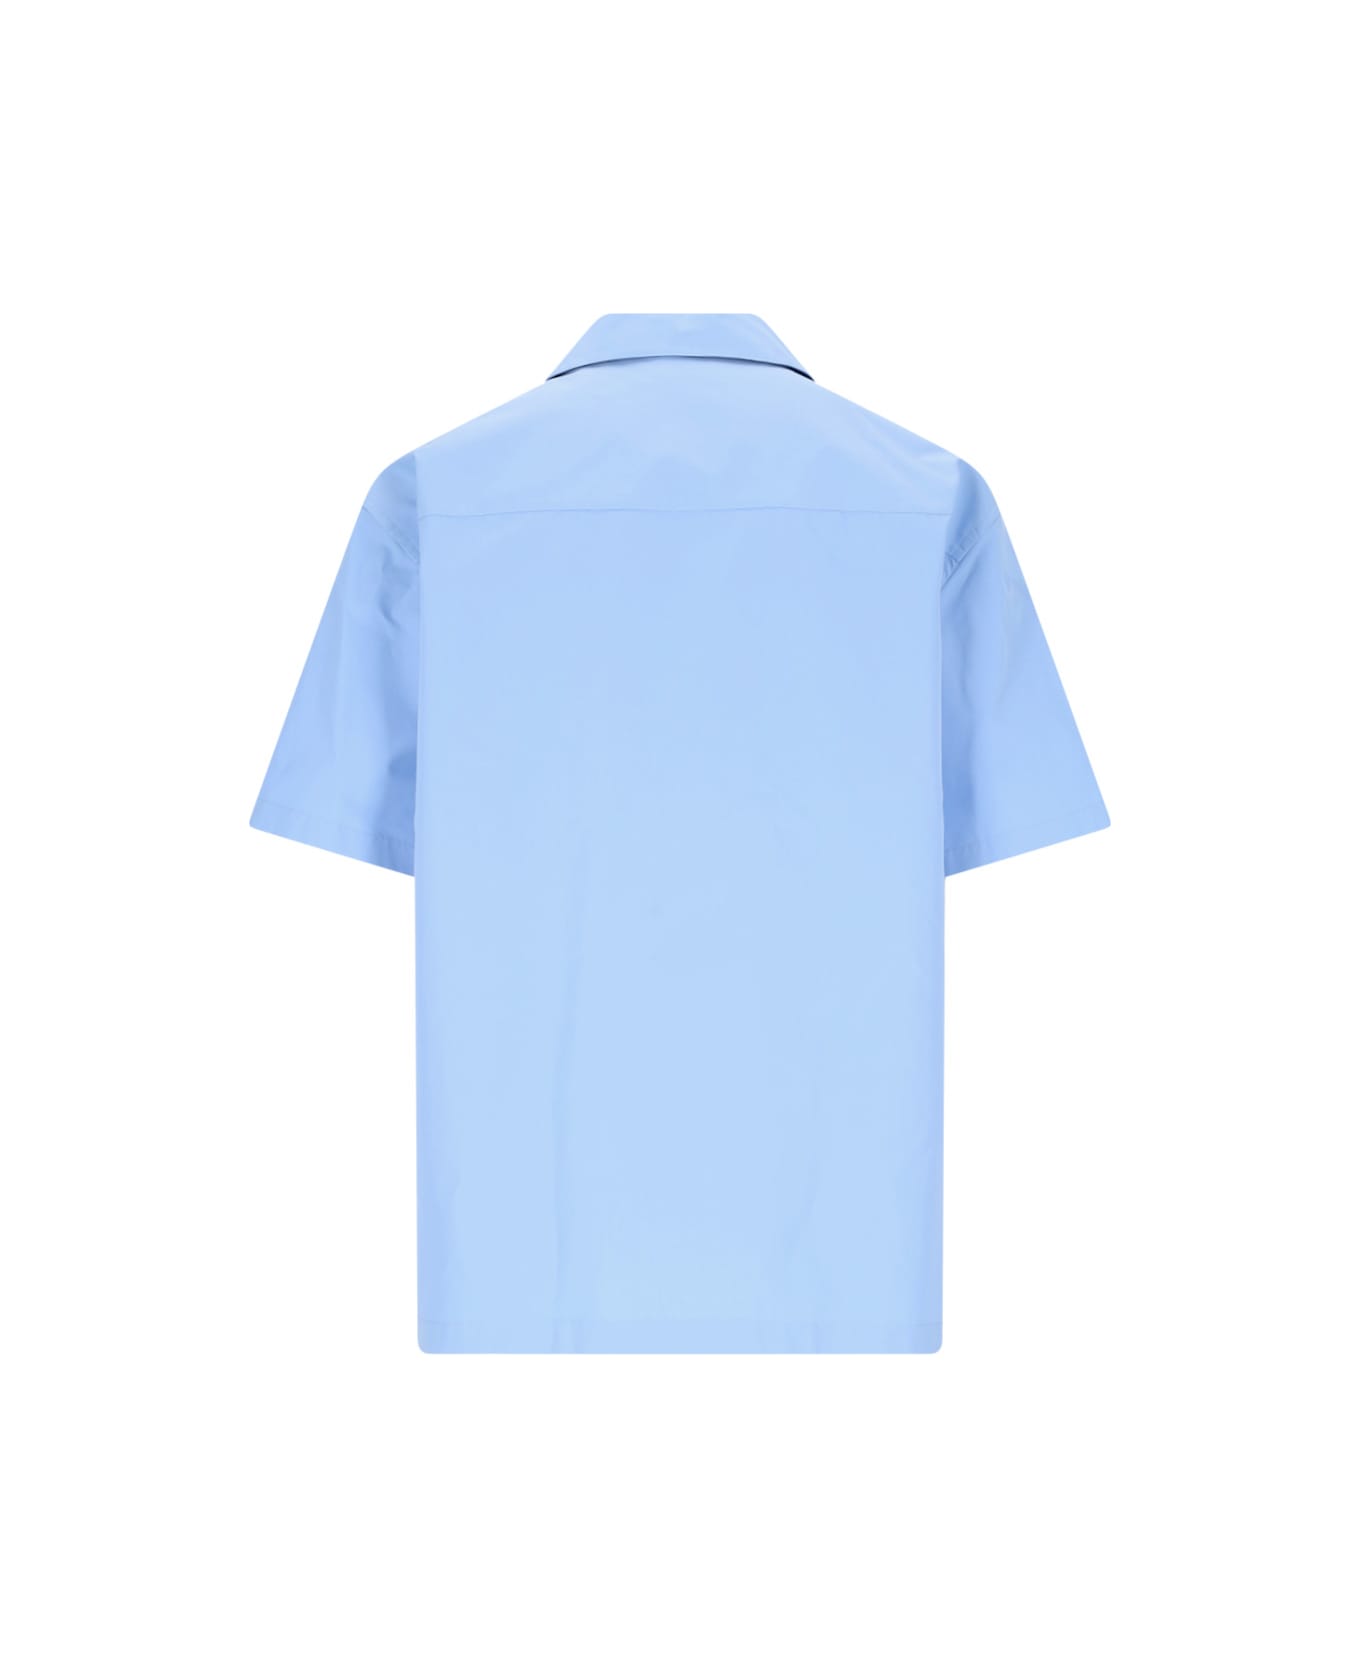 Jil Sander Boxy Shirt - 523